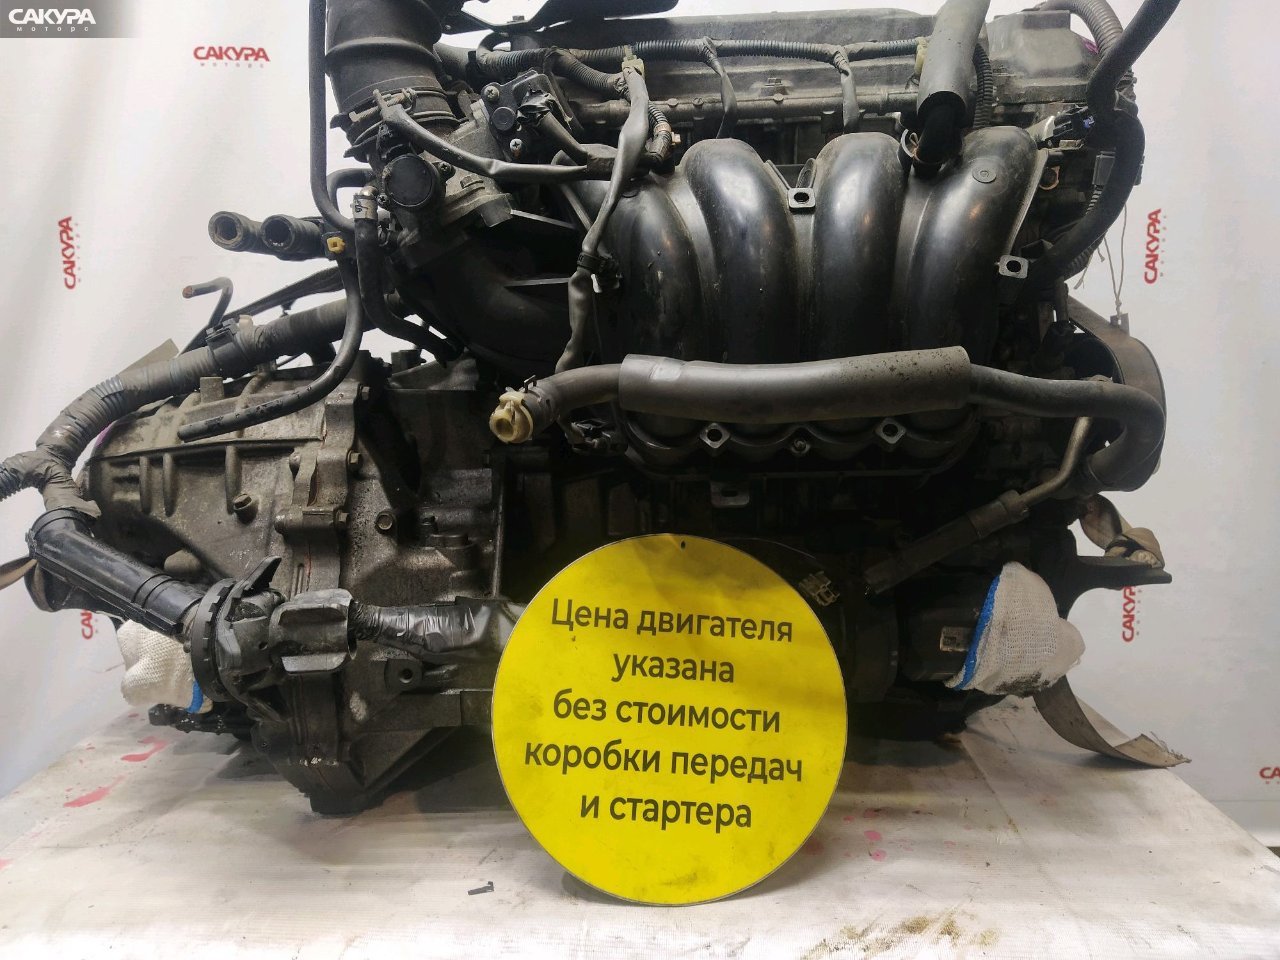 Двигатель Toyota Alphard ANH10W 2AZ-FE: купить в Сакура Красноярск.